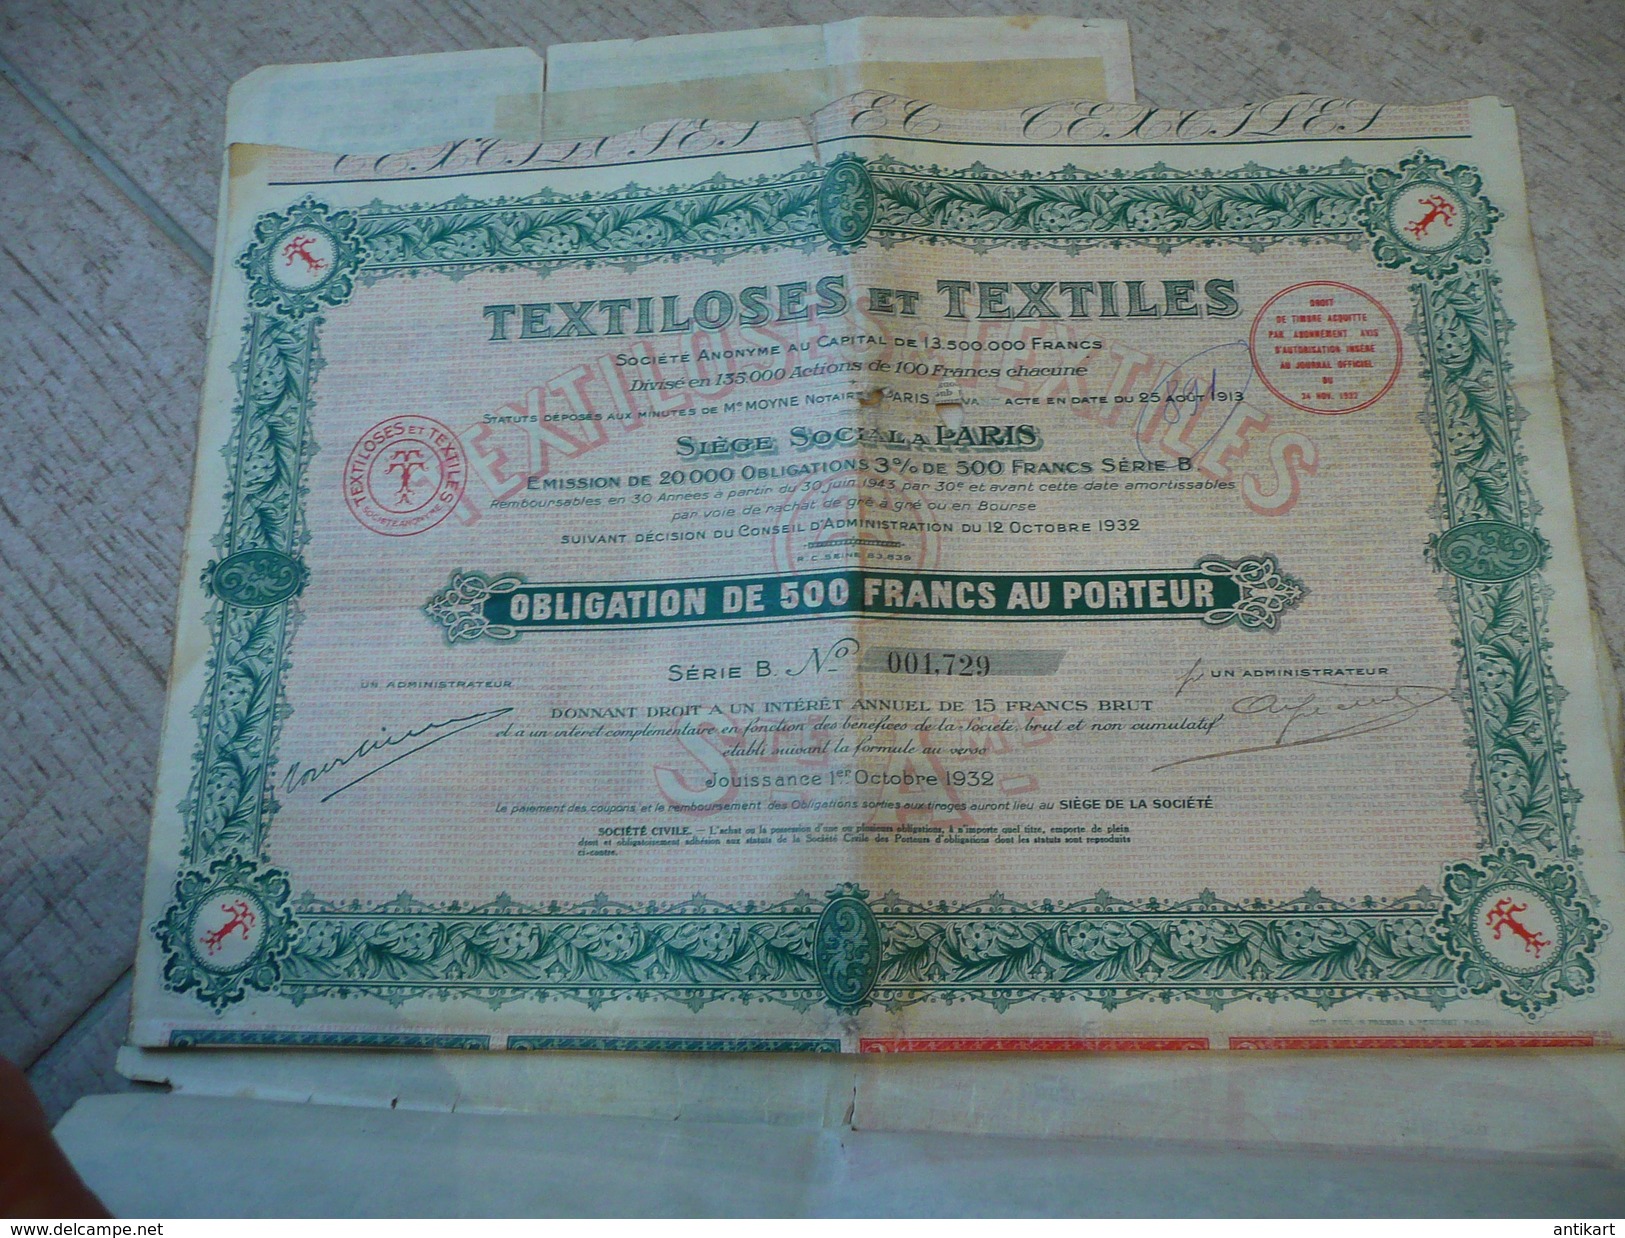 Textiloses Et Textiles Obligation De 500f - Paris 1932 - Textiel